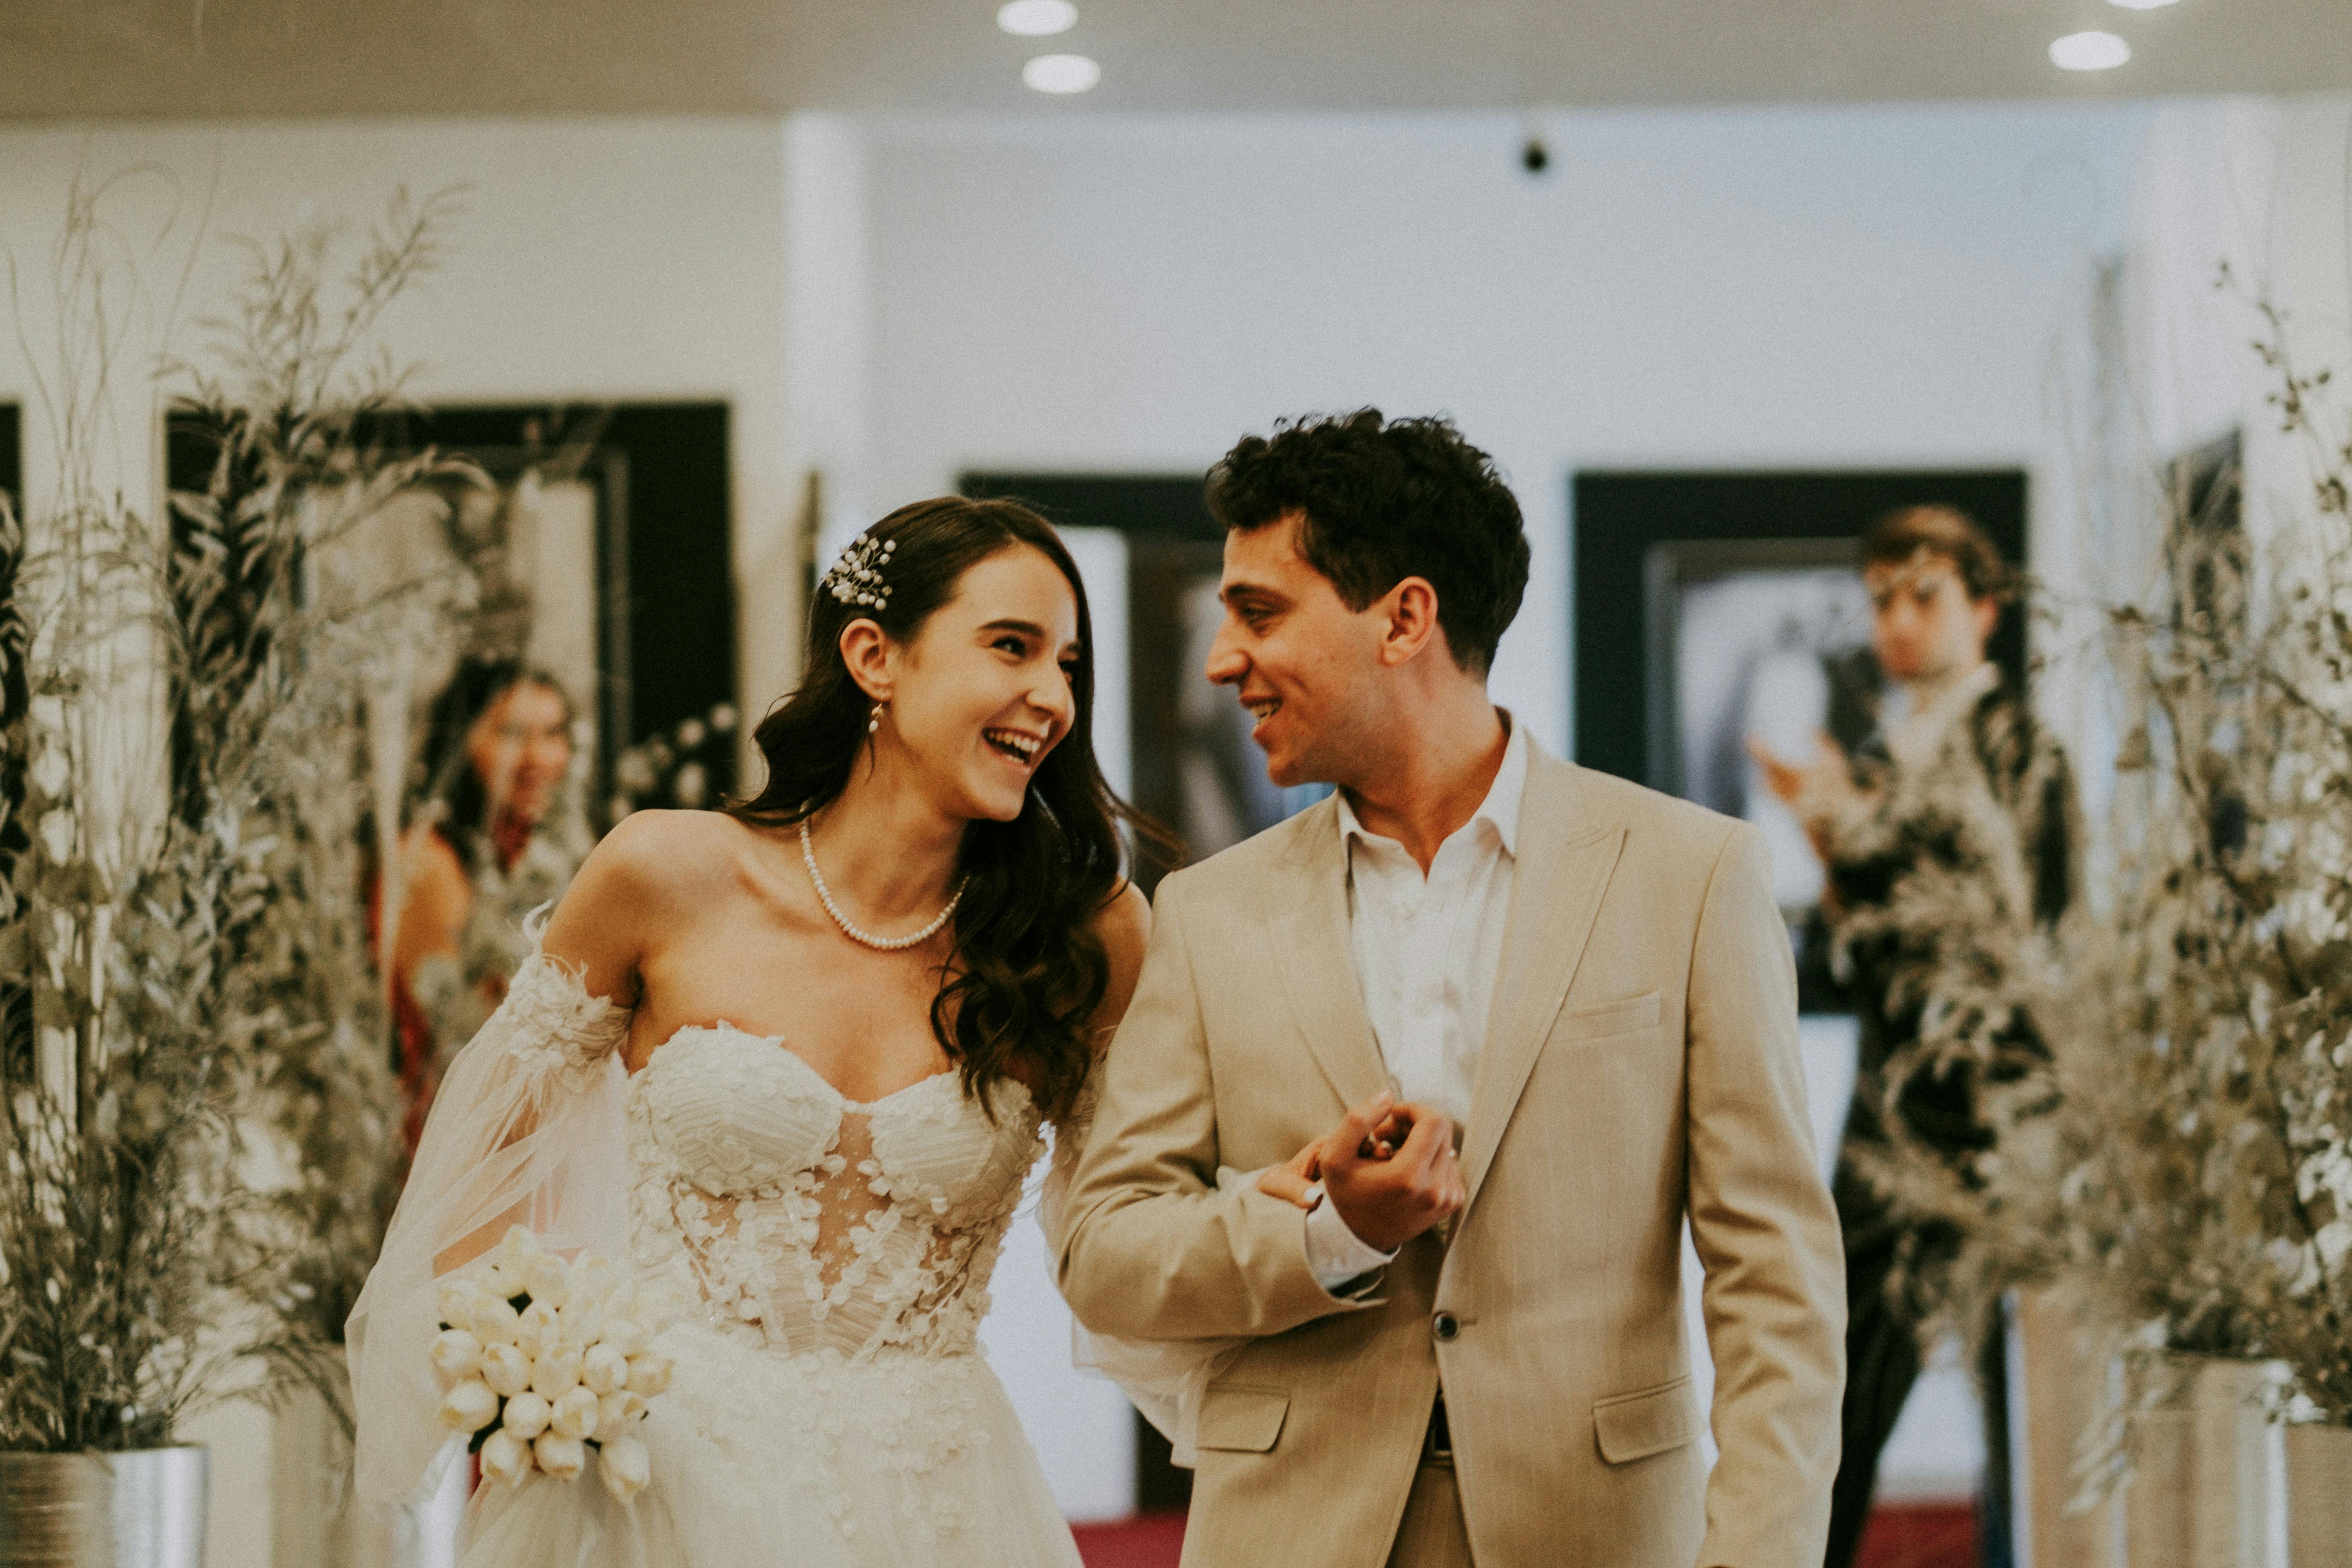 Braut und Bräutigam gehen Arm in Arm und schauen sich an | Quelle: Pexels